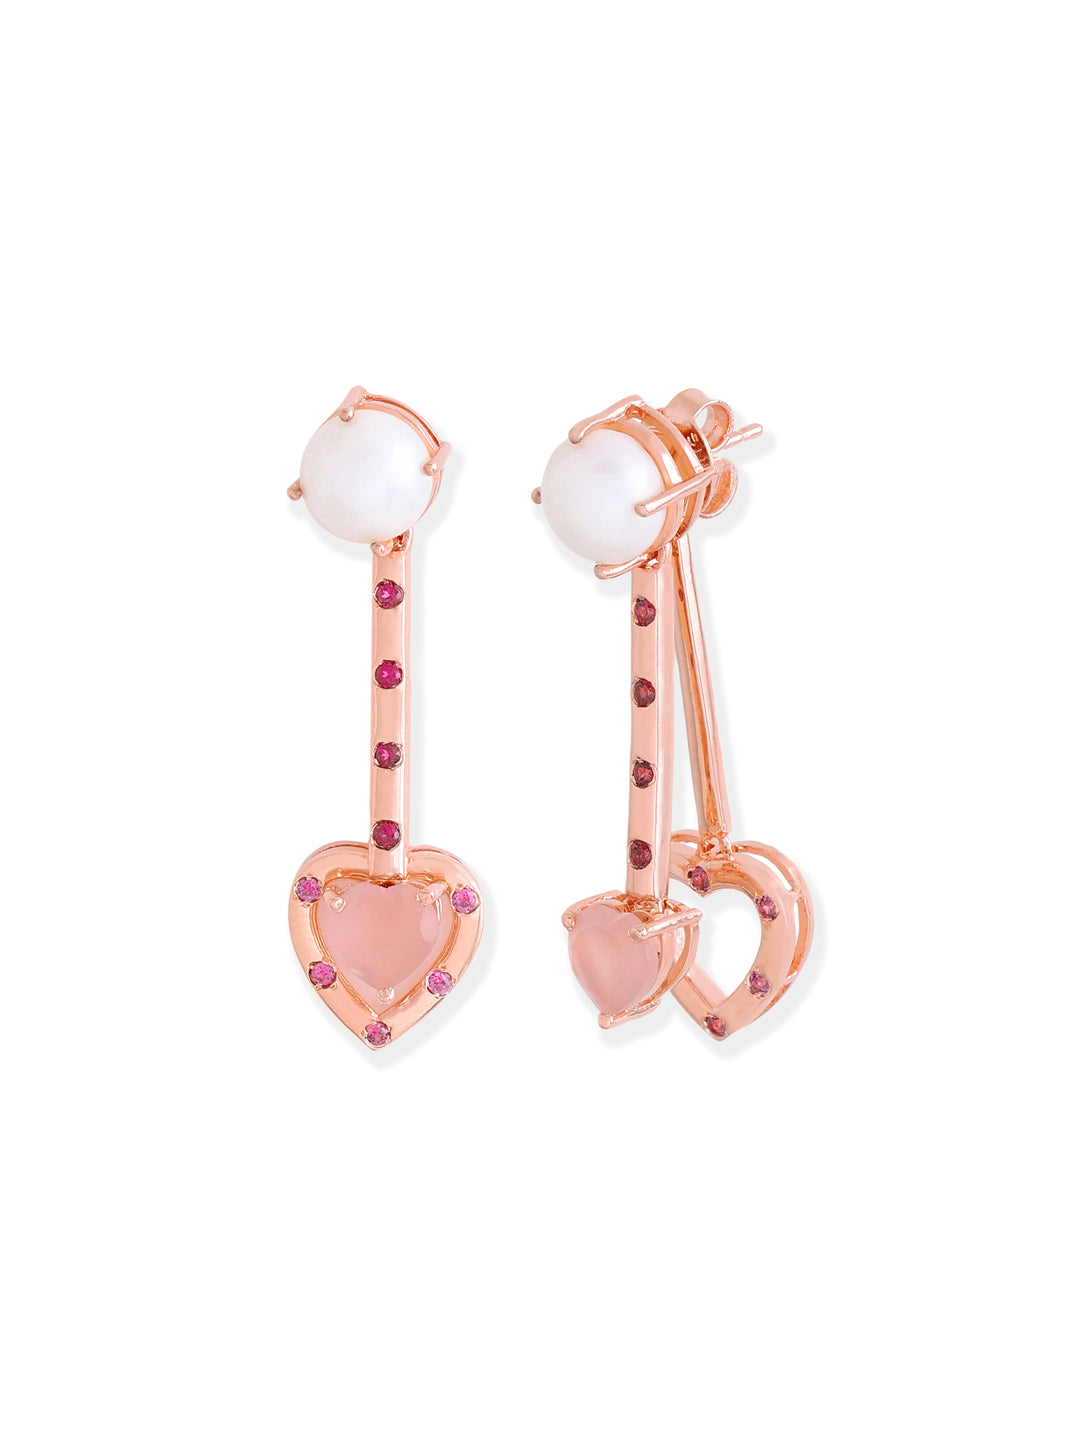 Dangling Fancy Heart Earrings